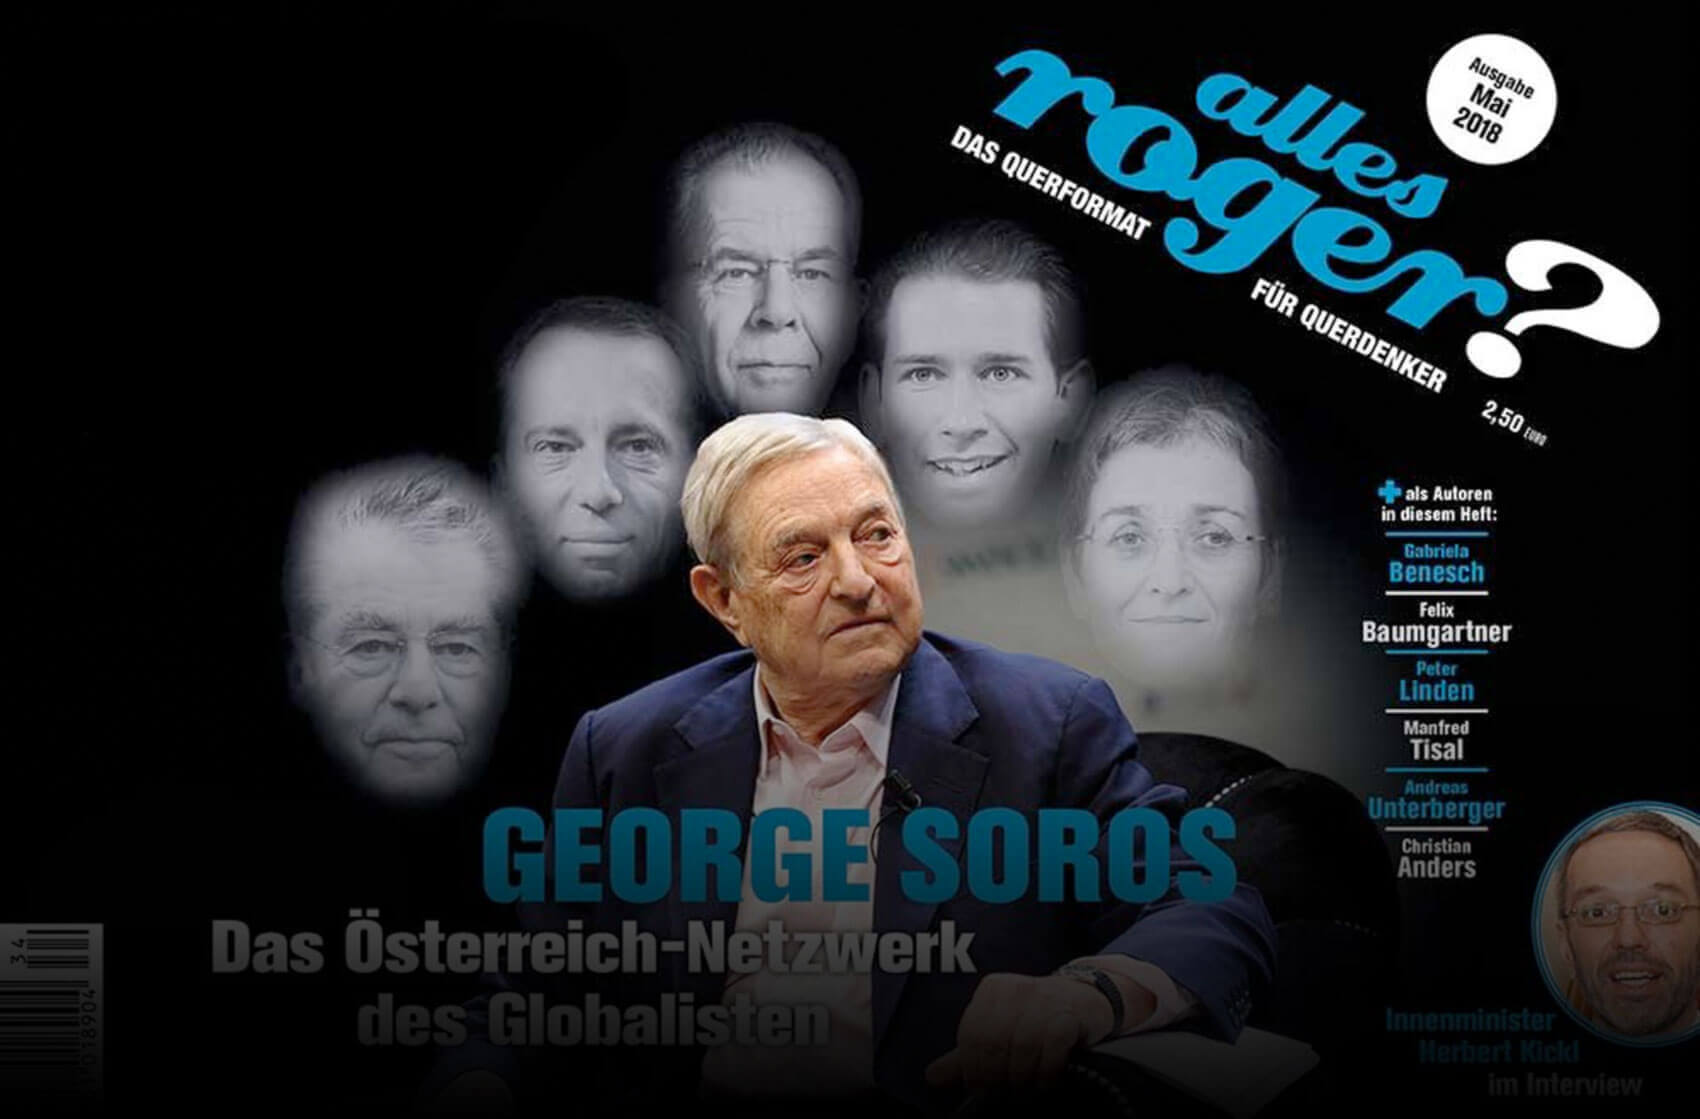 FPÖ-Ministerien sponsern Zeitschrift für rechte Verschwörungen und Antisemitismus